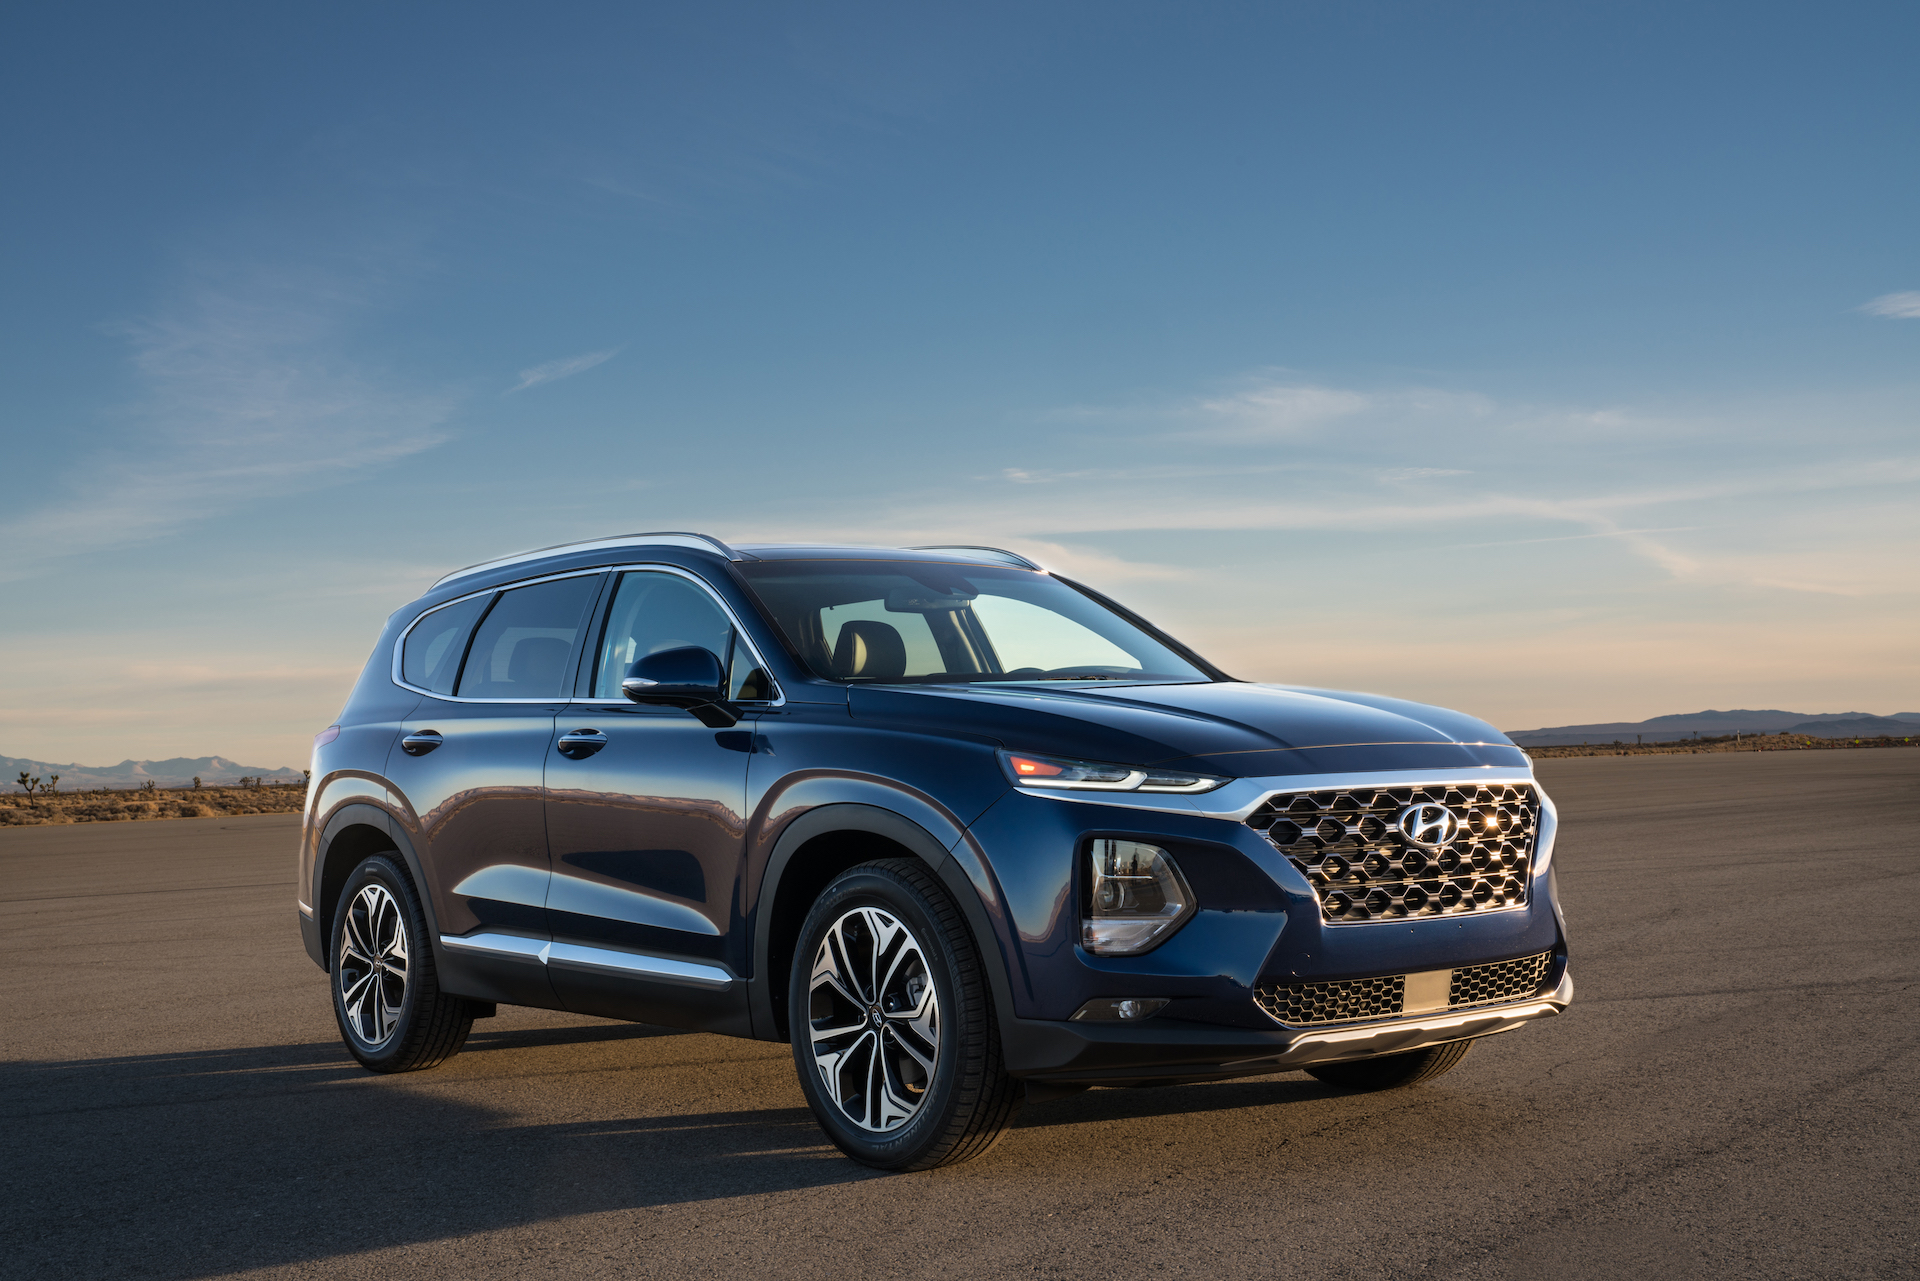 2020 Hyundai Santa Fe Review - Your Choice Way